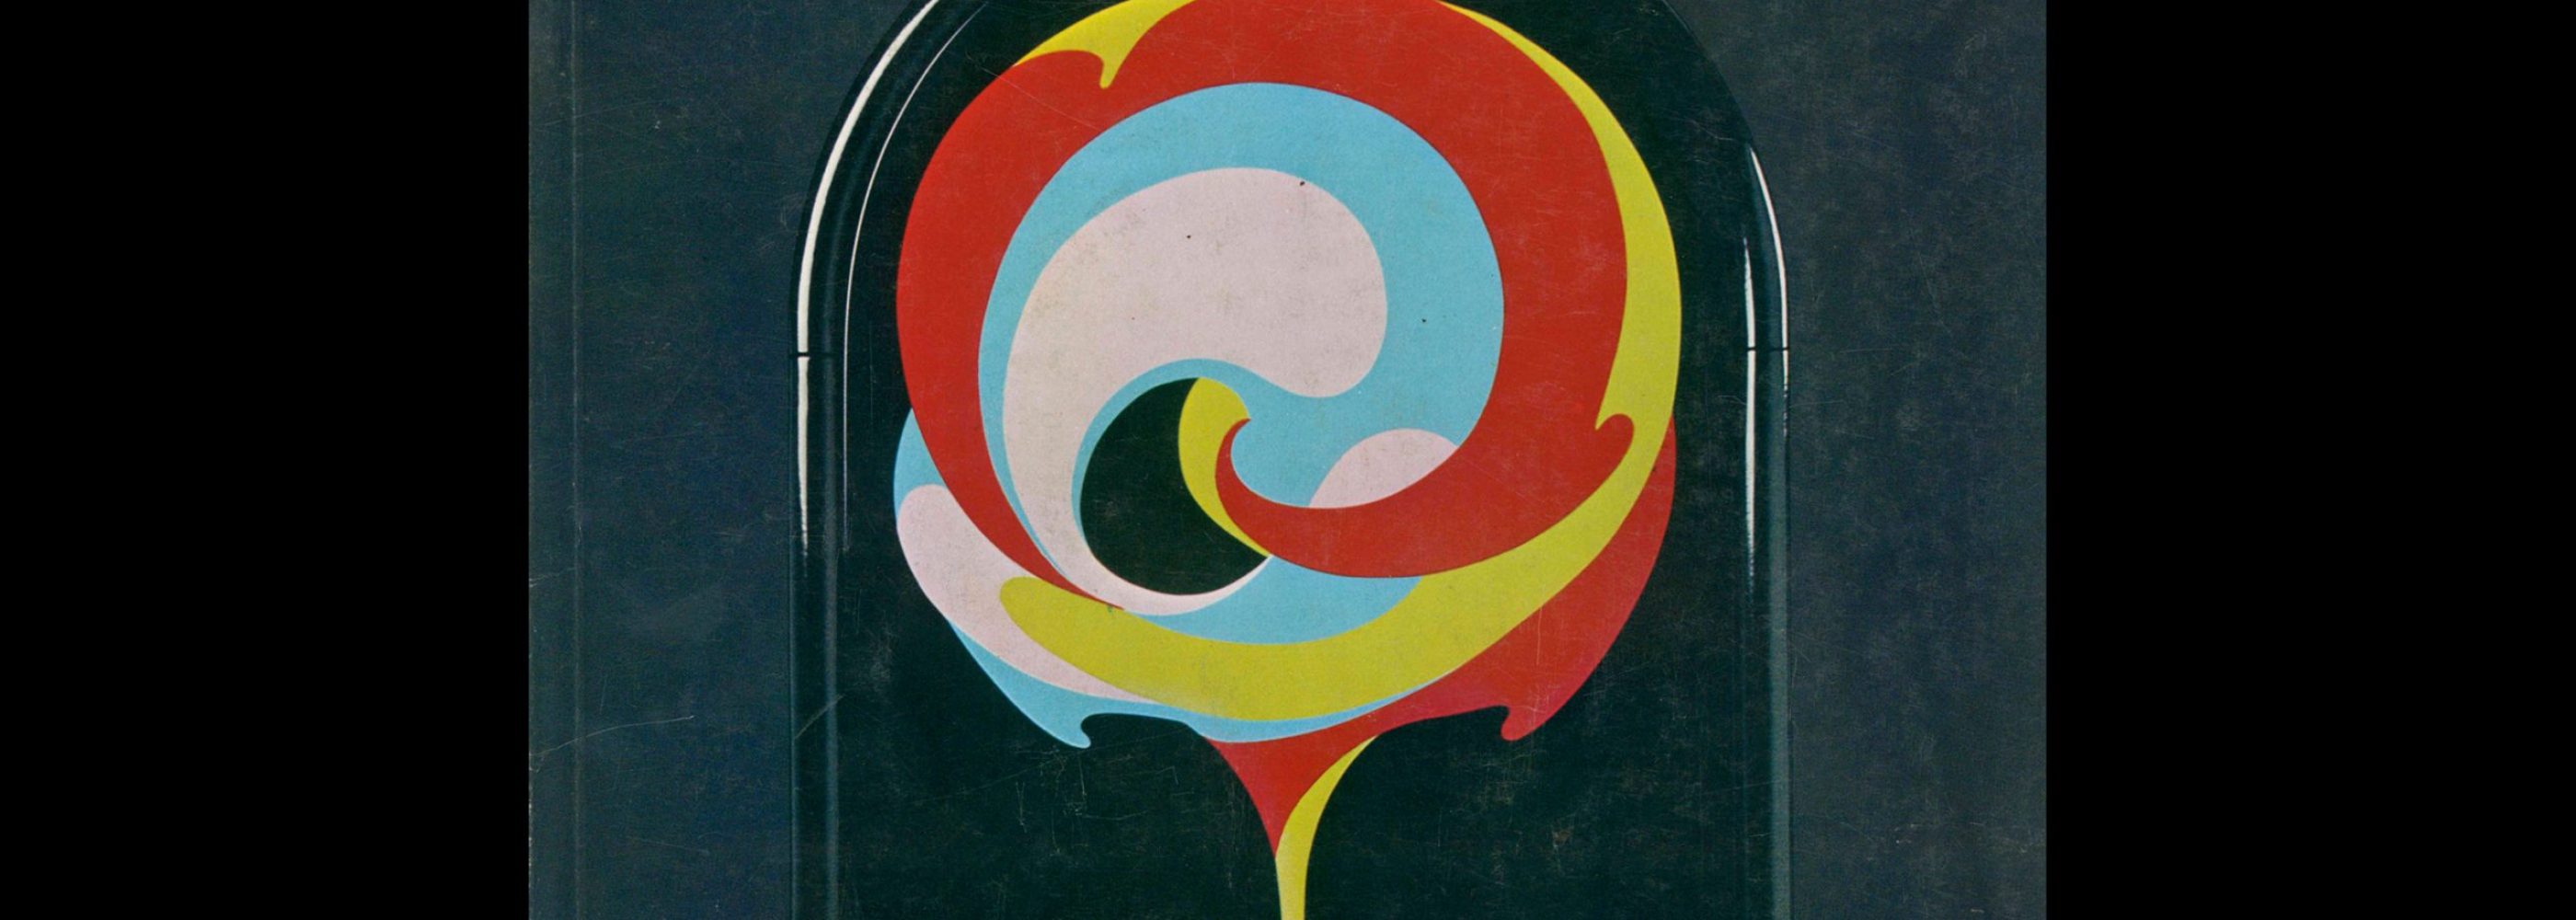 Novum Gebrauchsgraphik, 8, 1977. Cover design by Bjørn Wiinblad